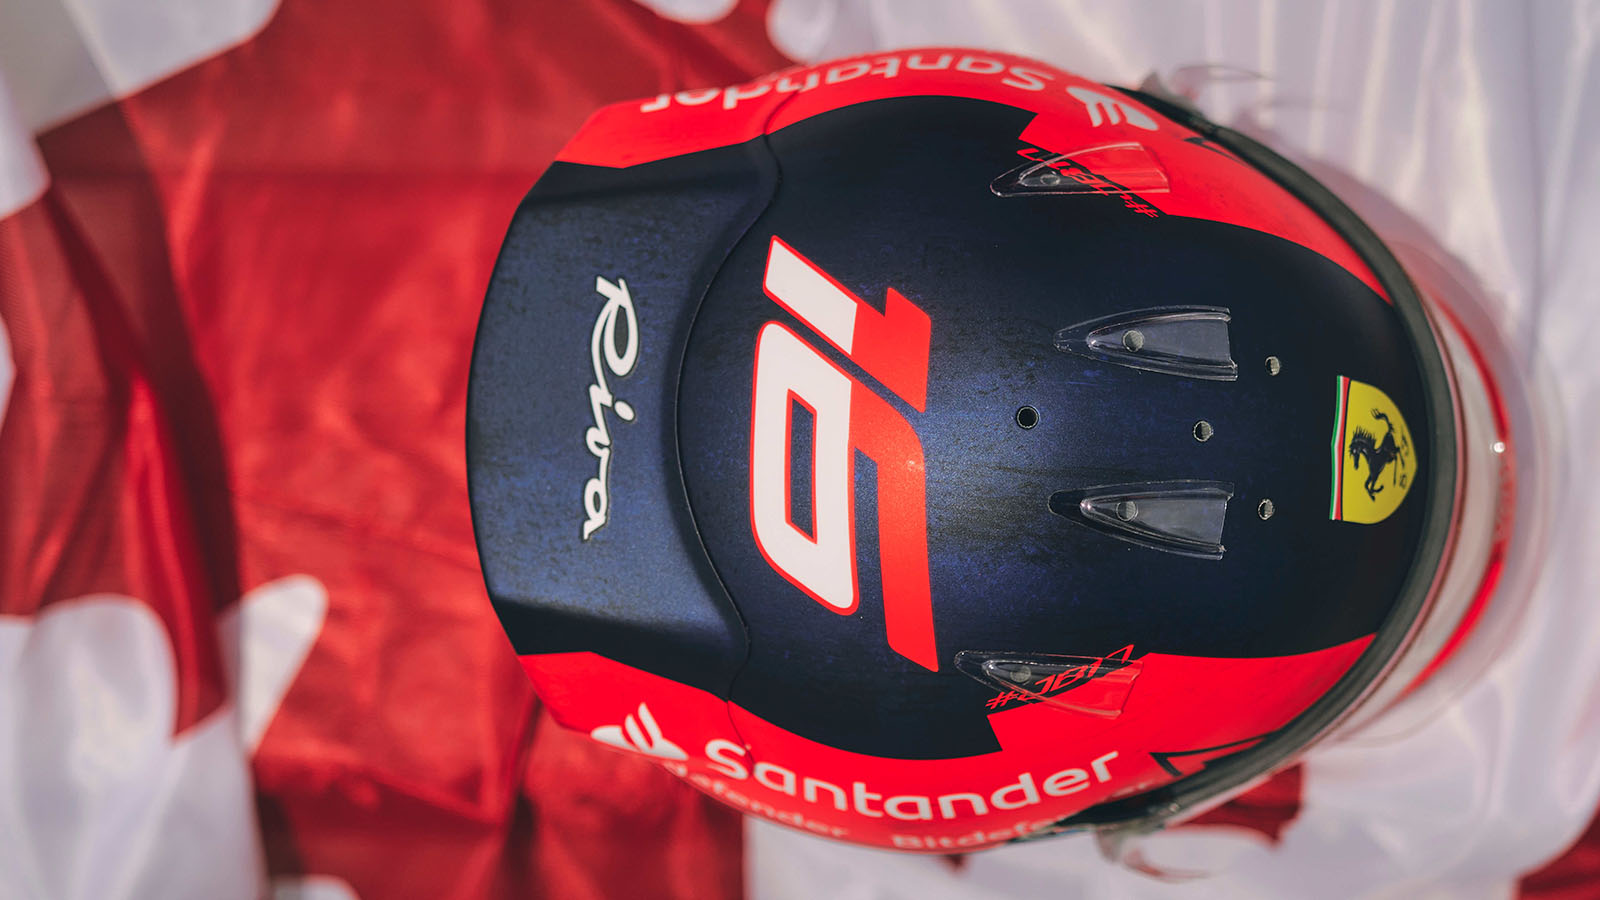 Charles Leclerc's Gilles Villeneuve tribute helmet causes issues with Villeneuve family. June 2023